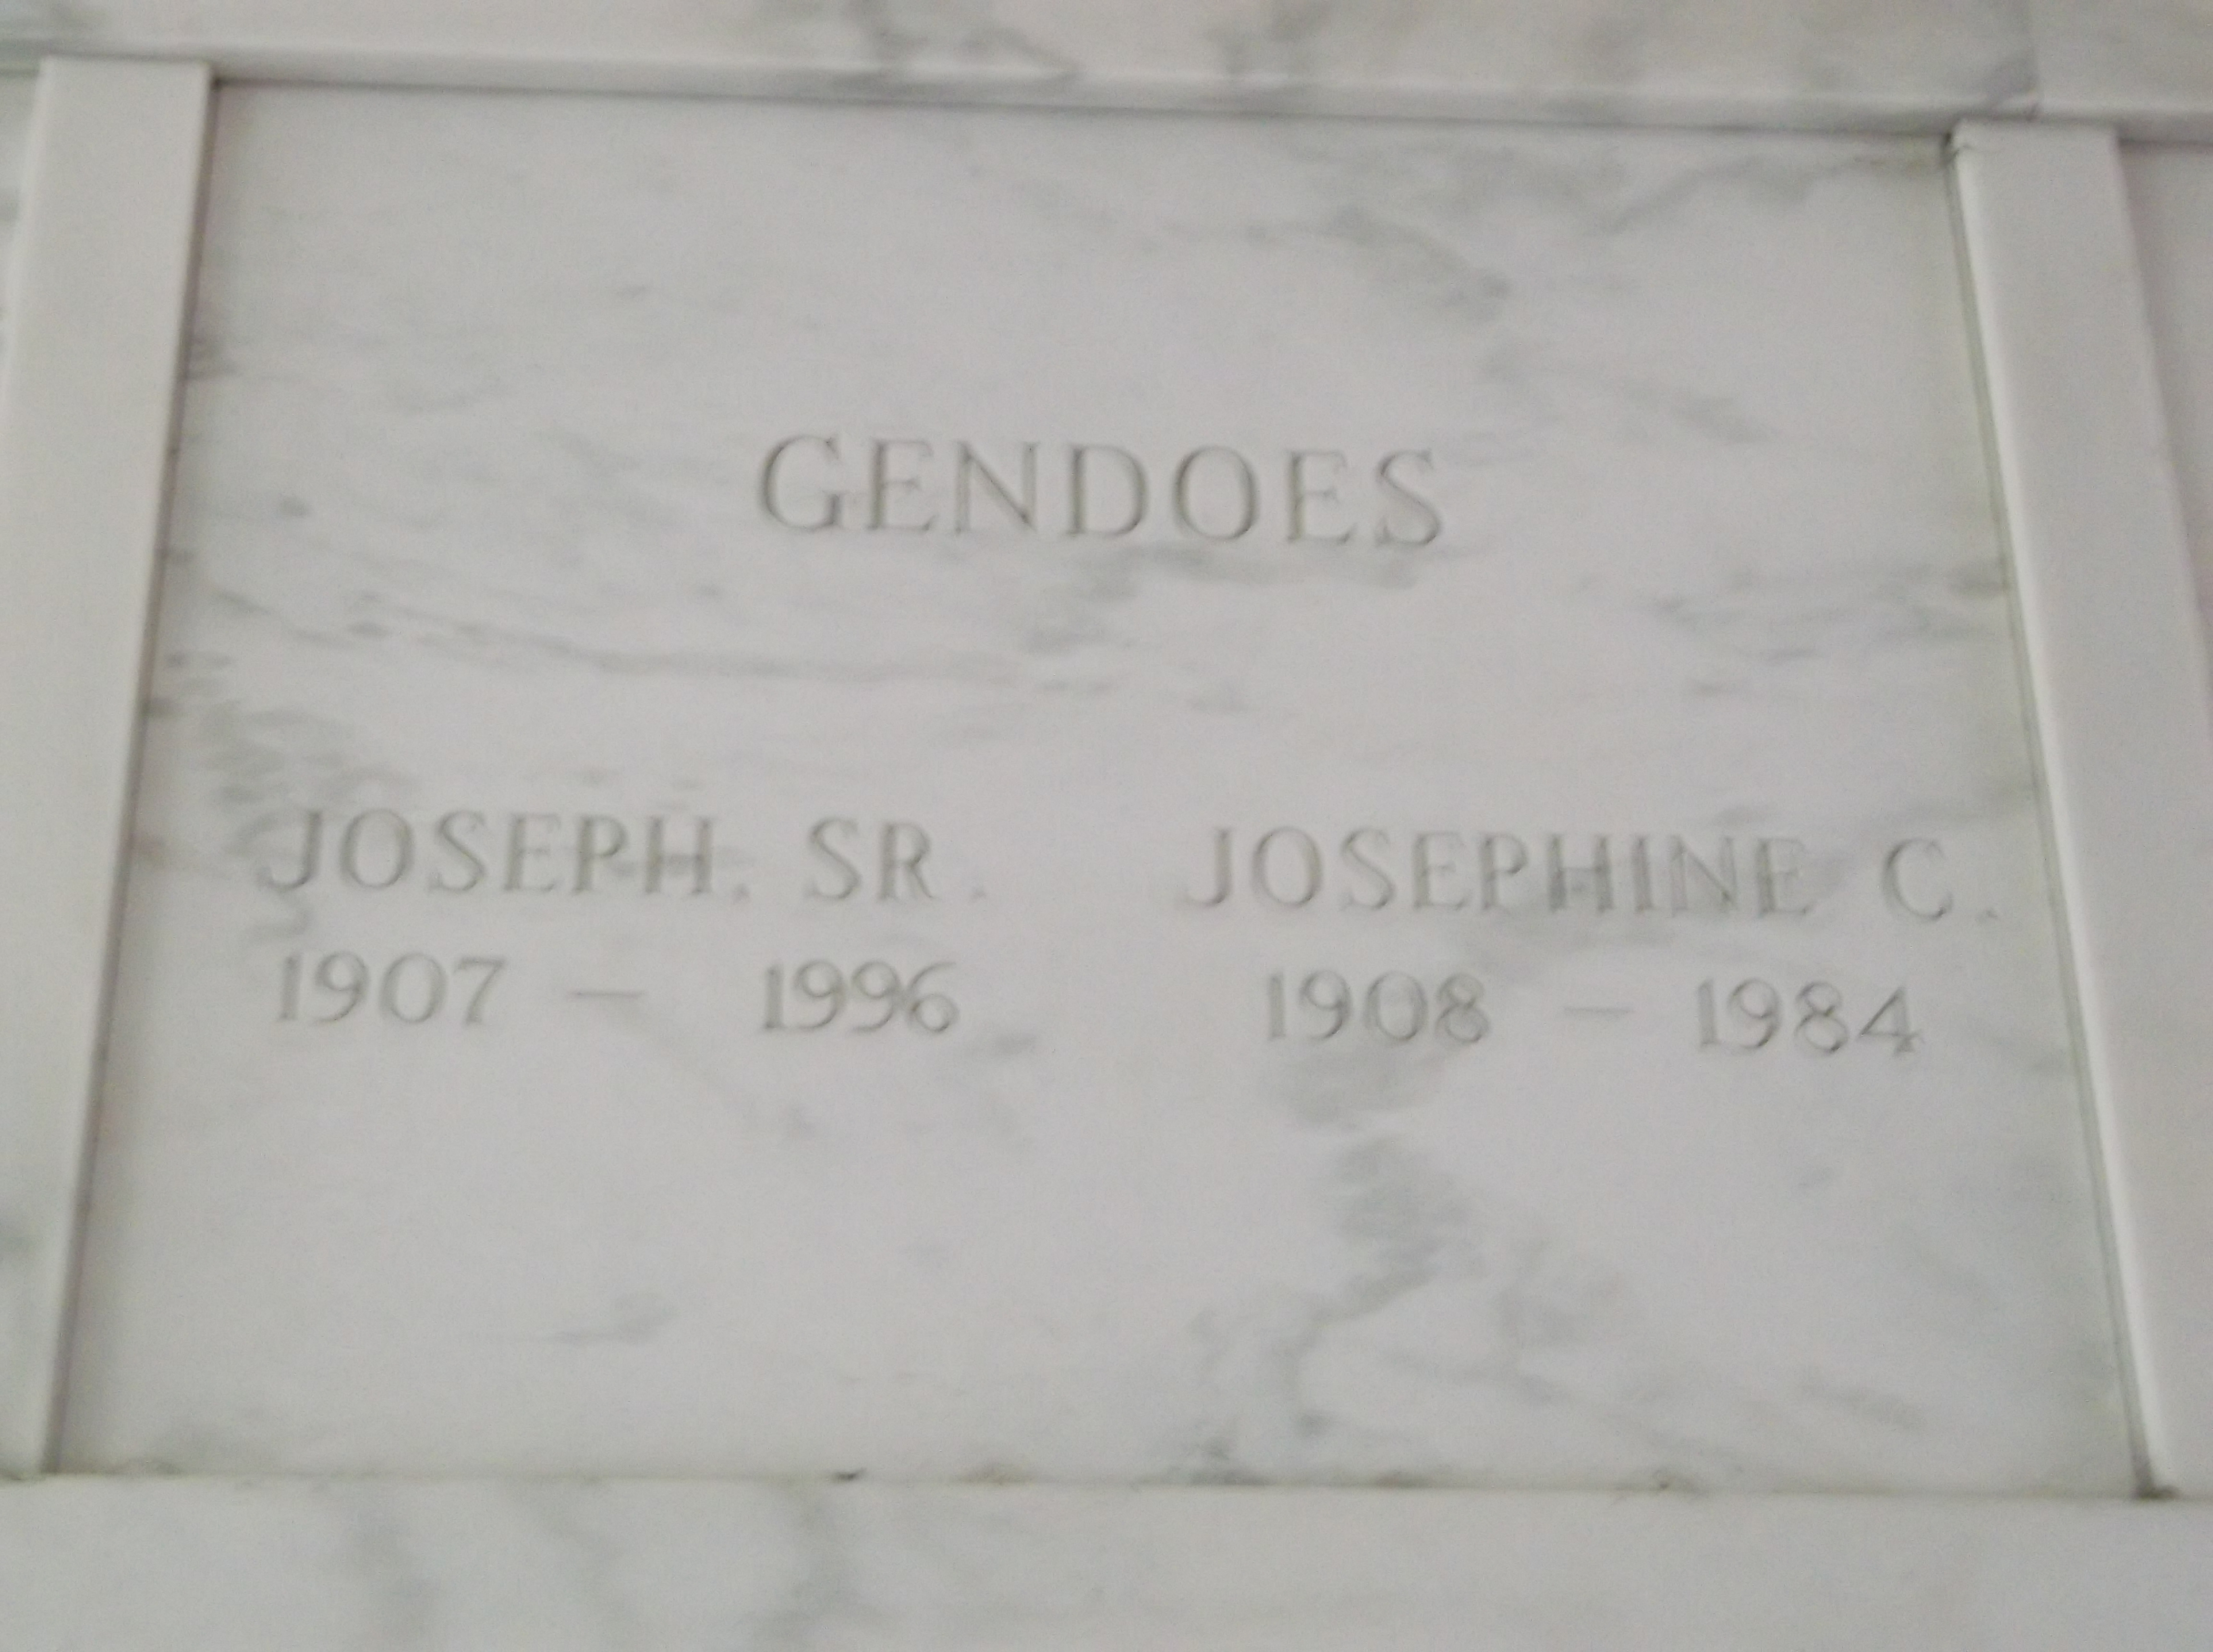 Josephine C Gendoes